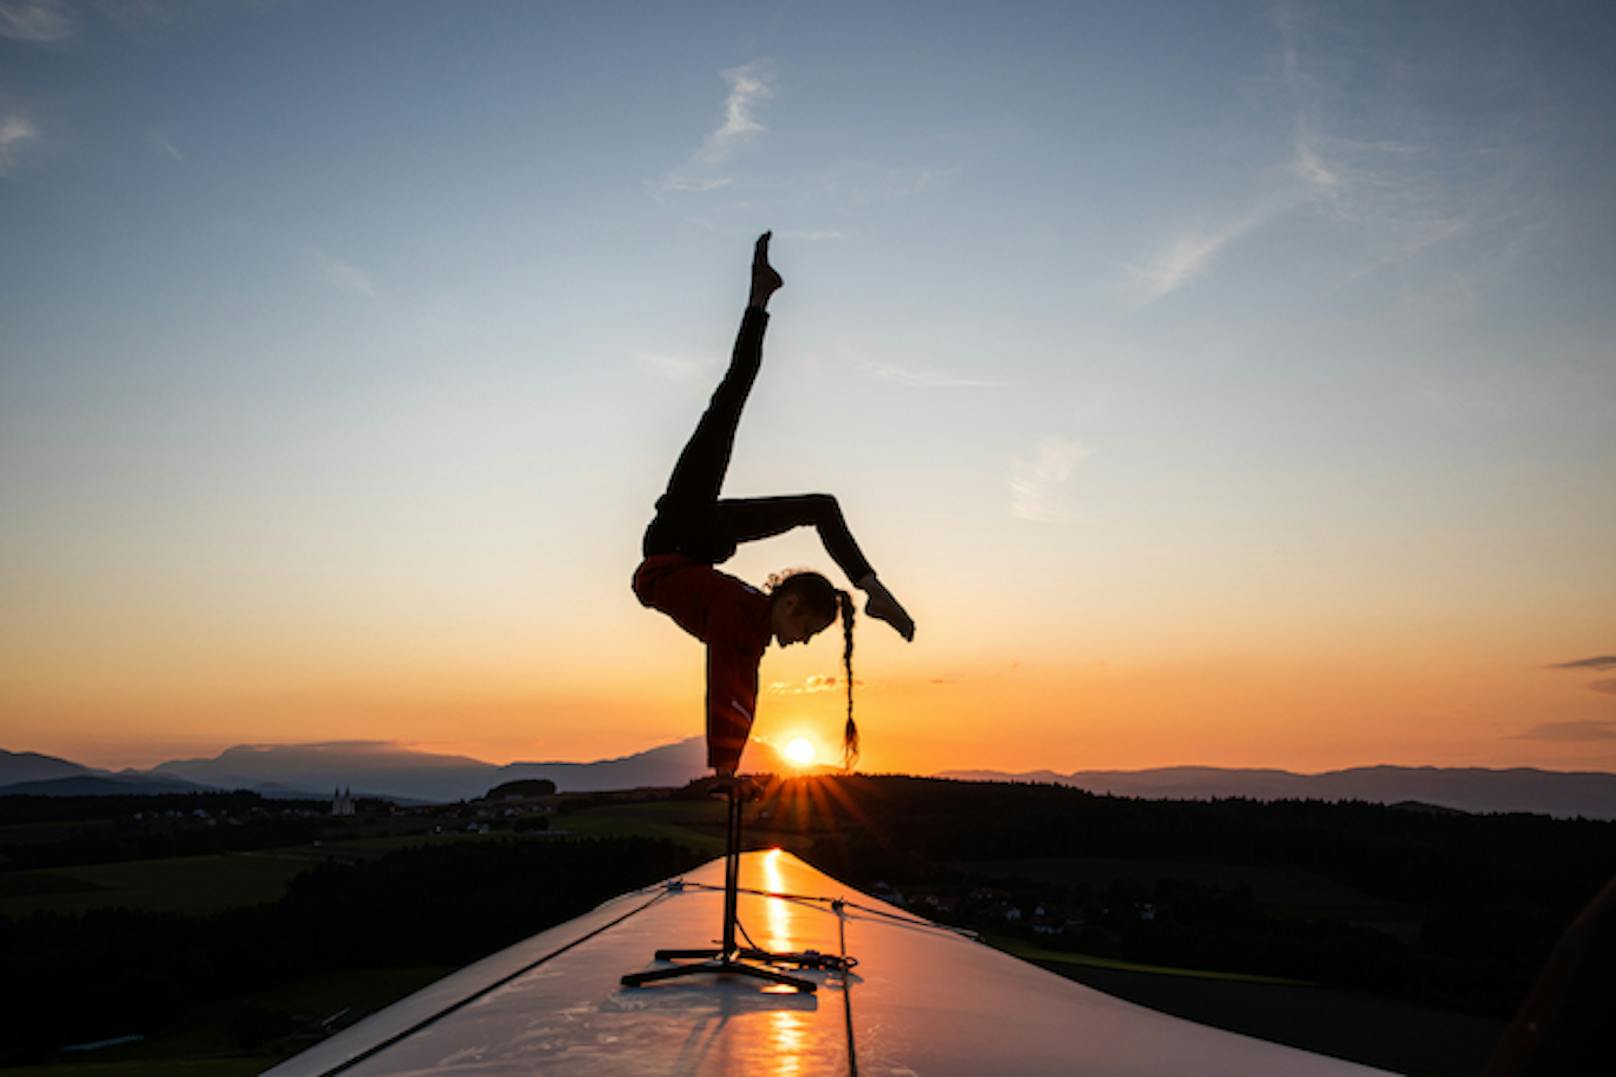 "Supertalent" zeigt Akrobatik-Stunt auf Windradspitze